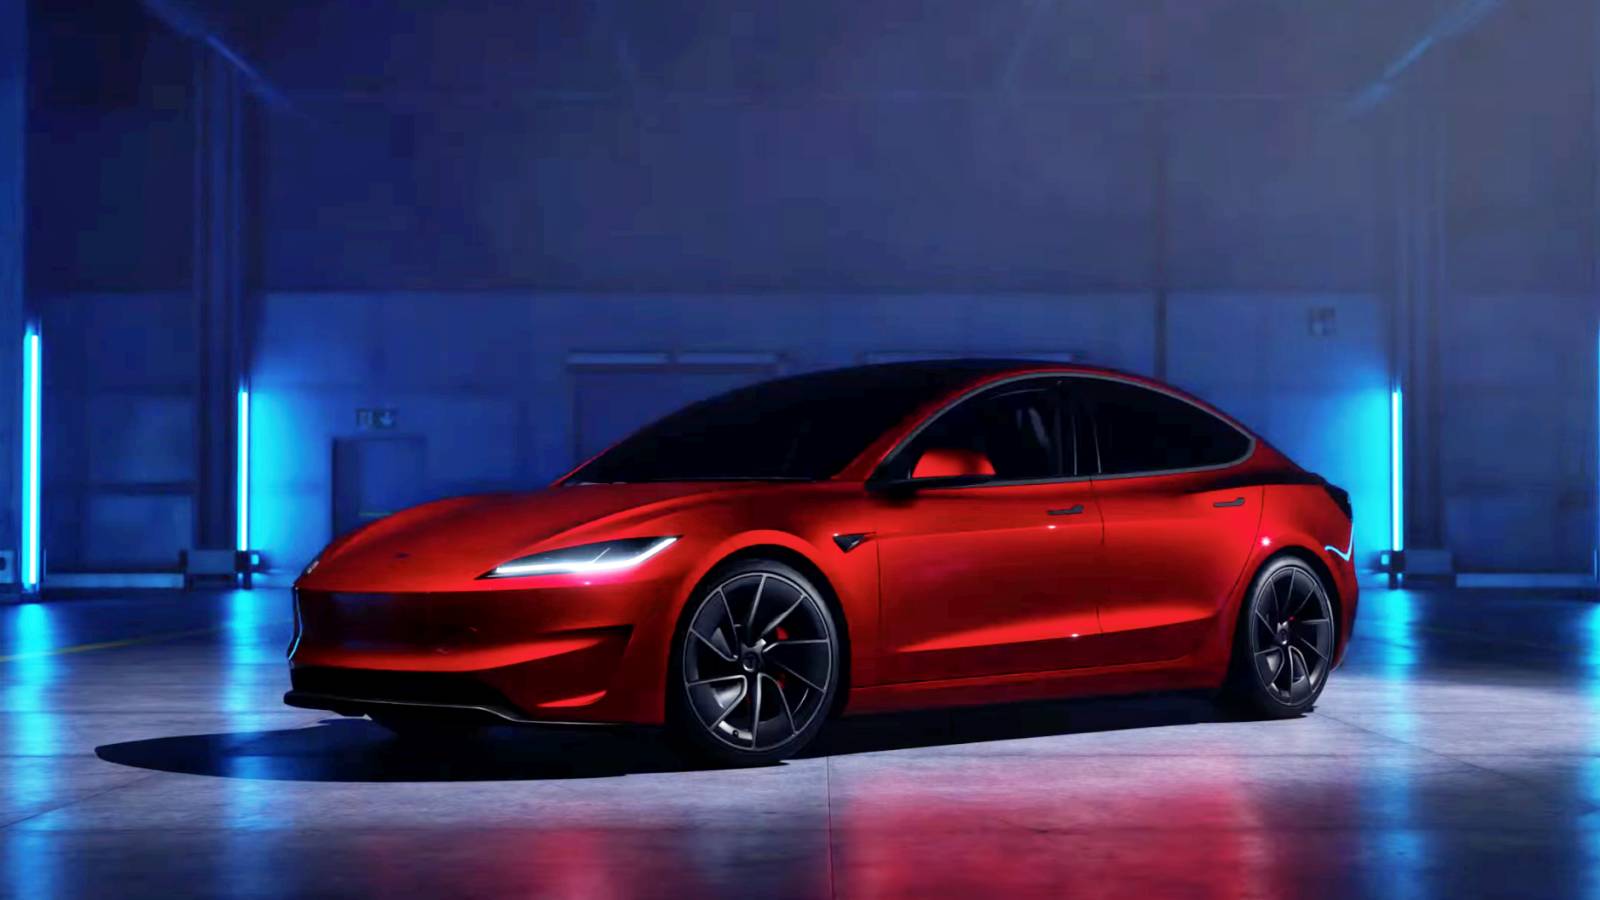 Tesla annonce la nouvelle version Model 3, voici les changements qu'elle apporte